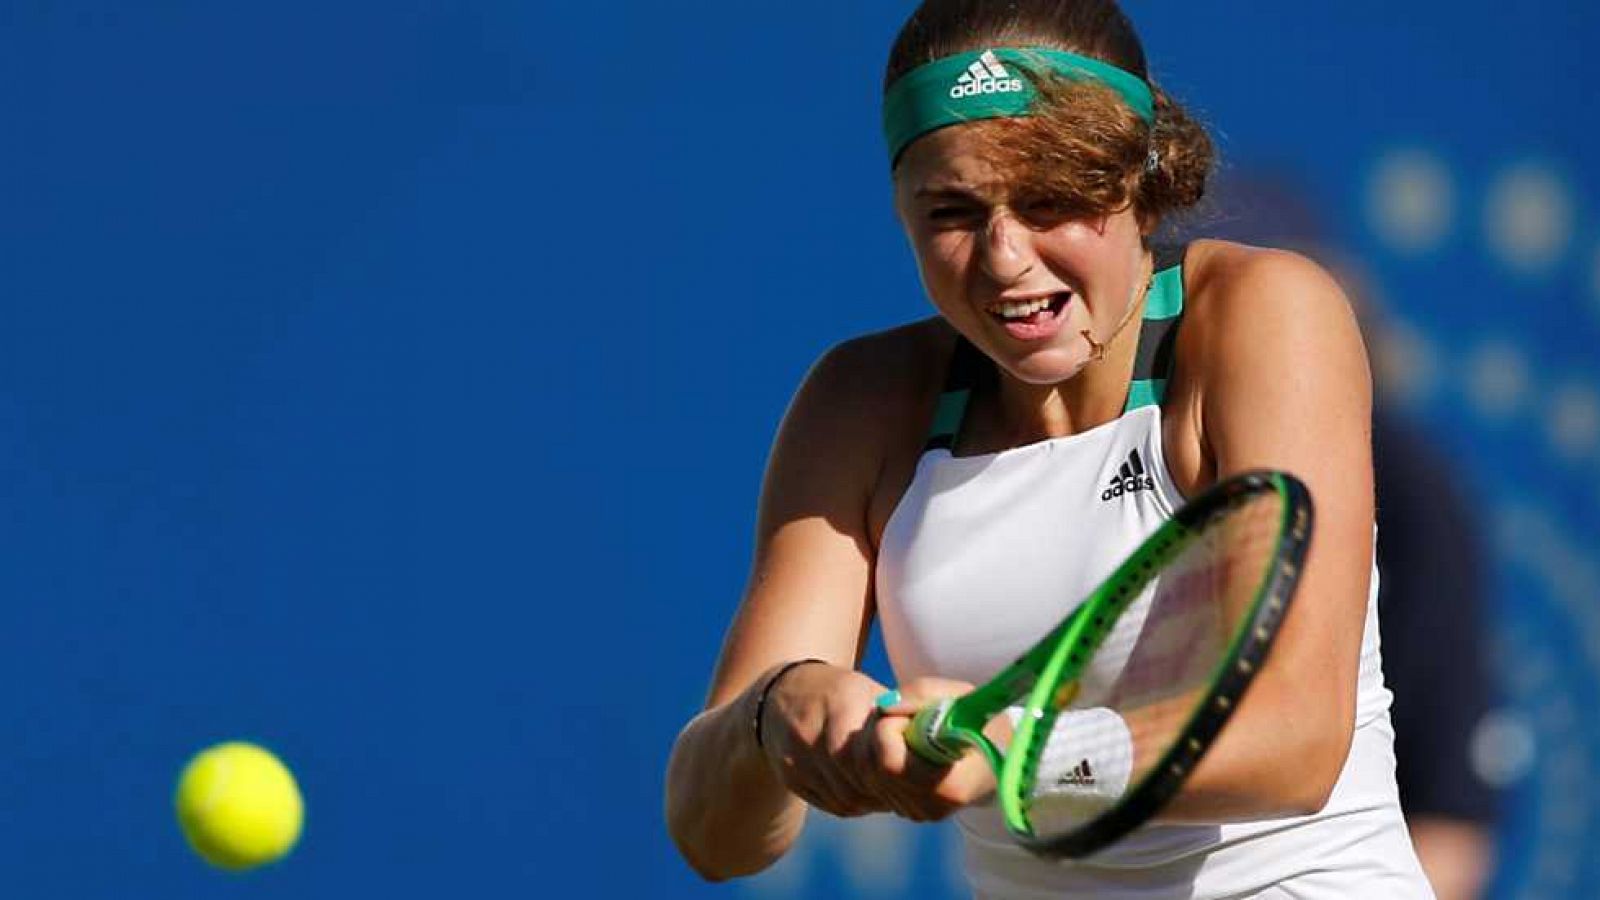 Tenis - WTA Torneo Eastbourne (Inglaterra): J. Ostapenko - C. Suárez